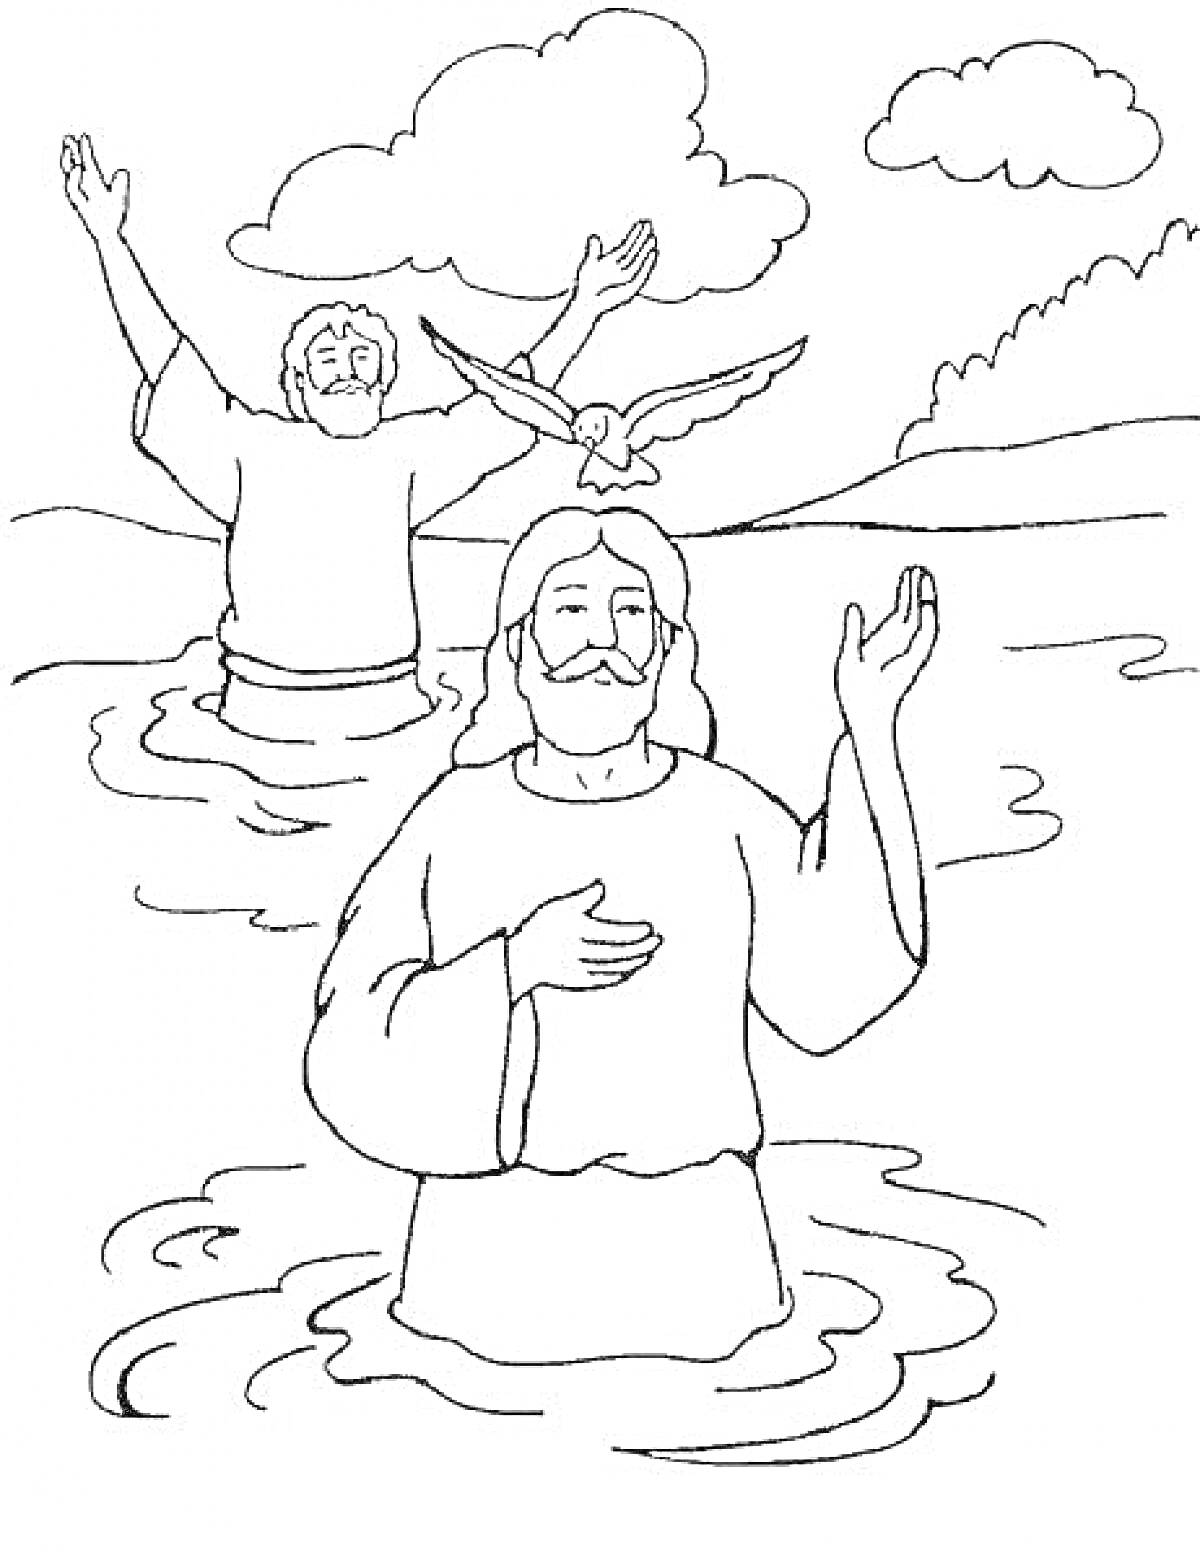 Раскраска Крещение Господне, два человека в воде, голубь во время крещения, облака, деревья на заднем плане